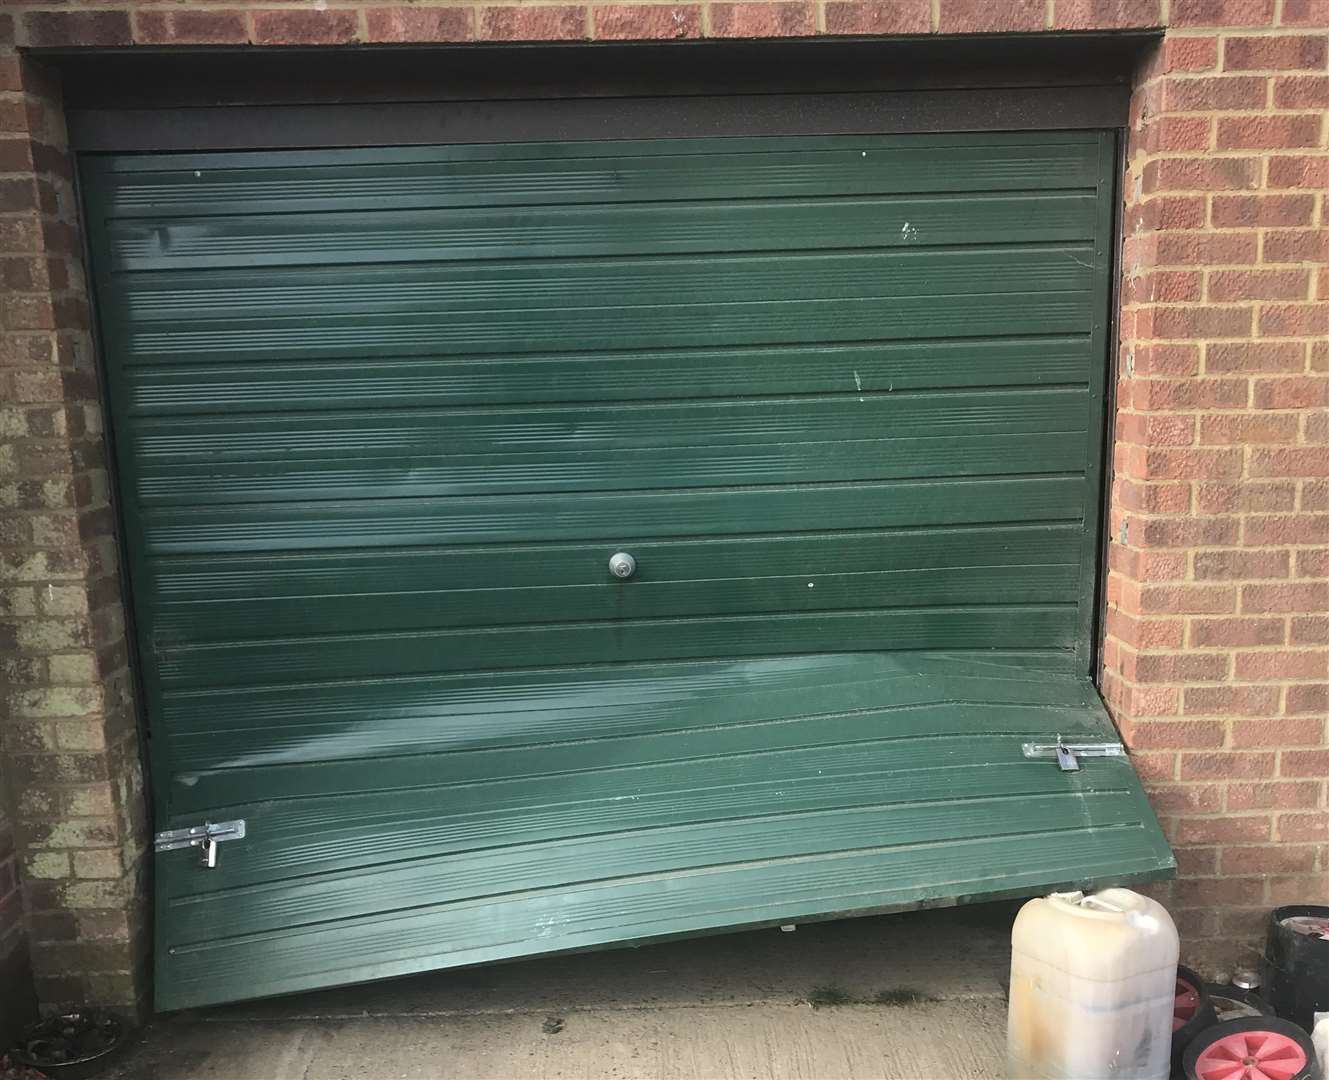 A garage door has been prised open